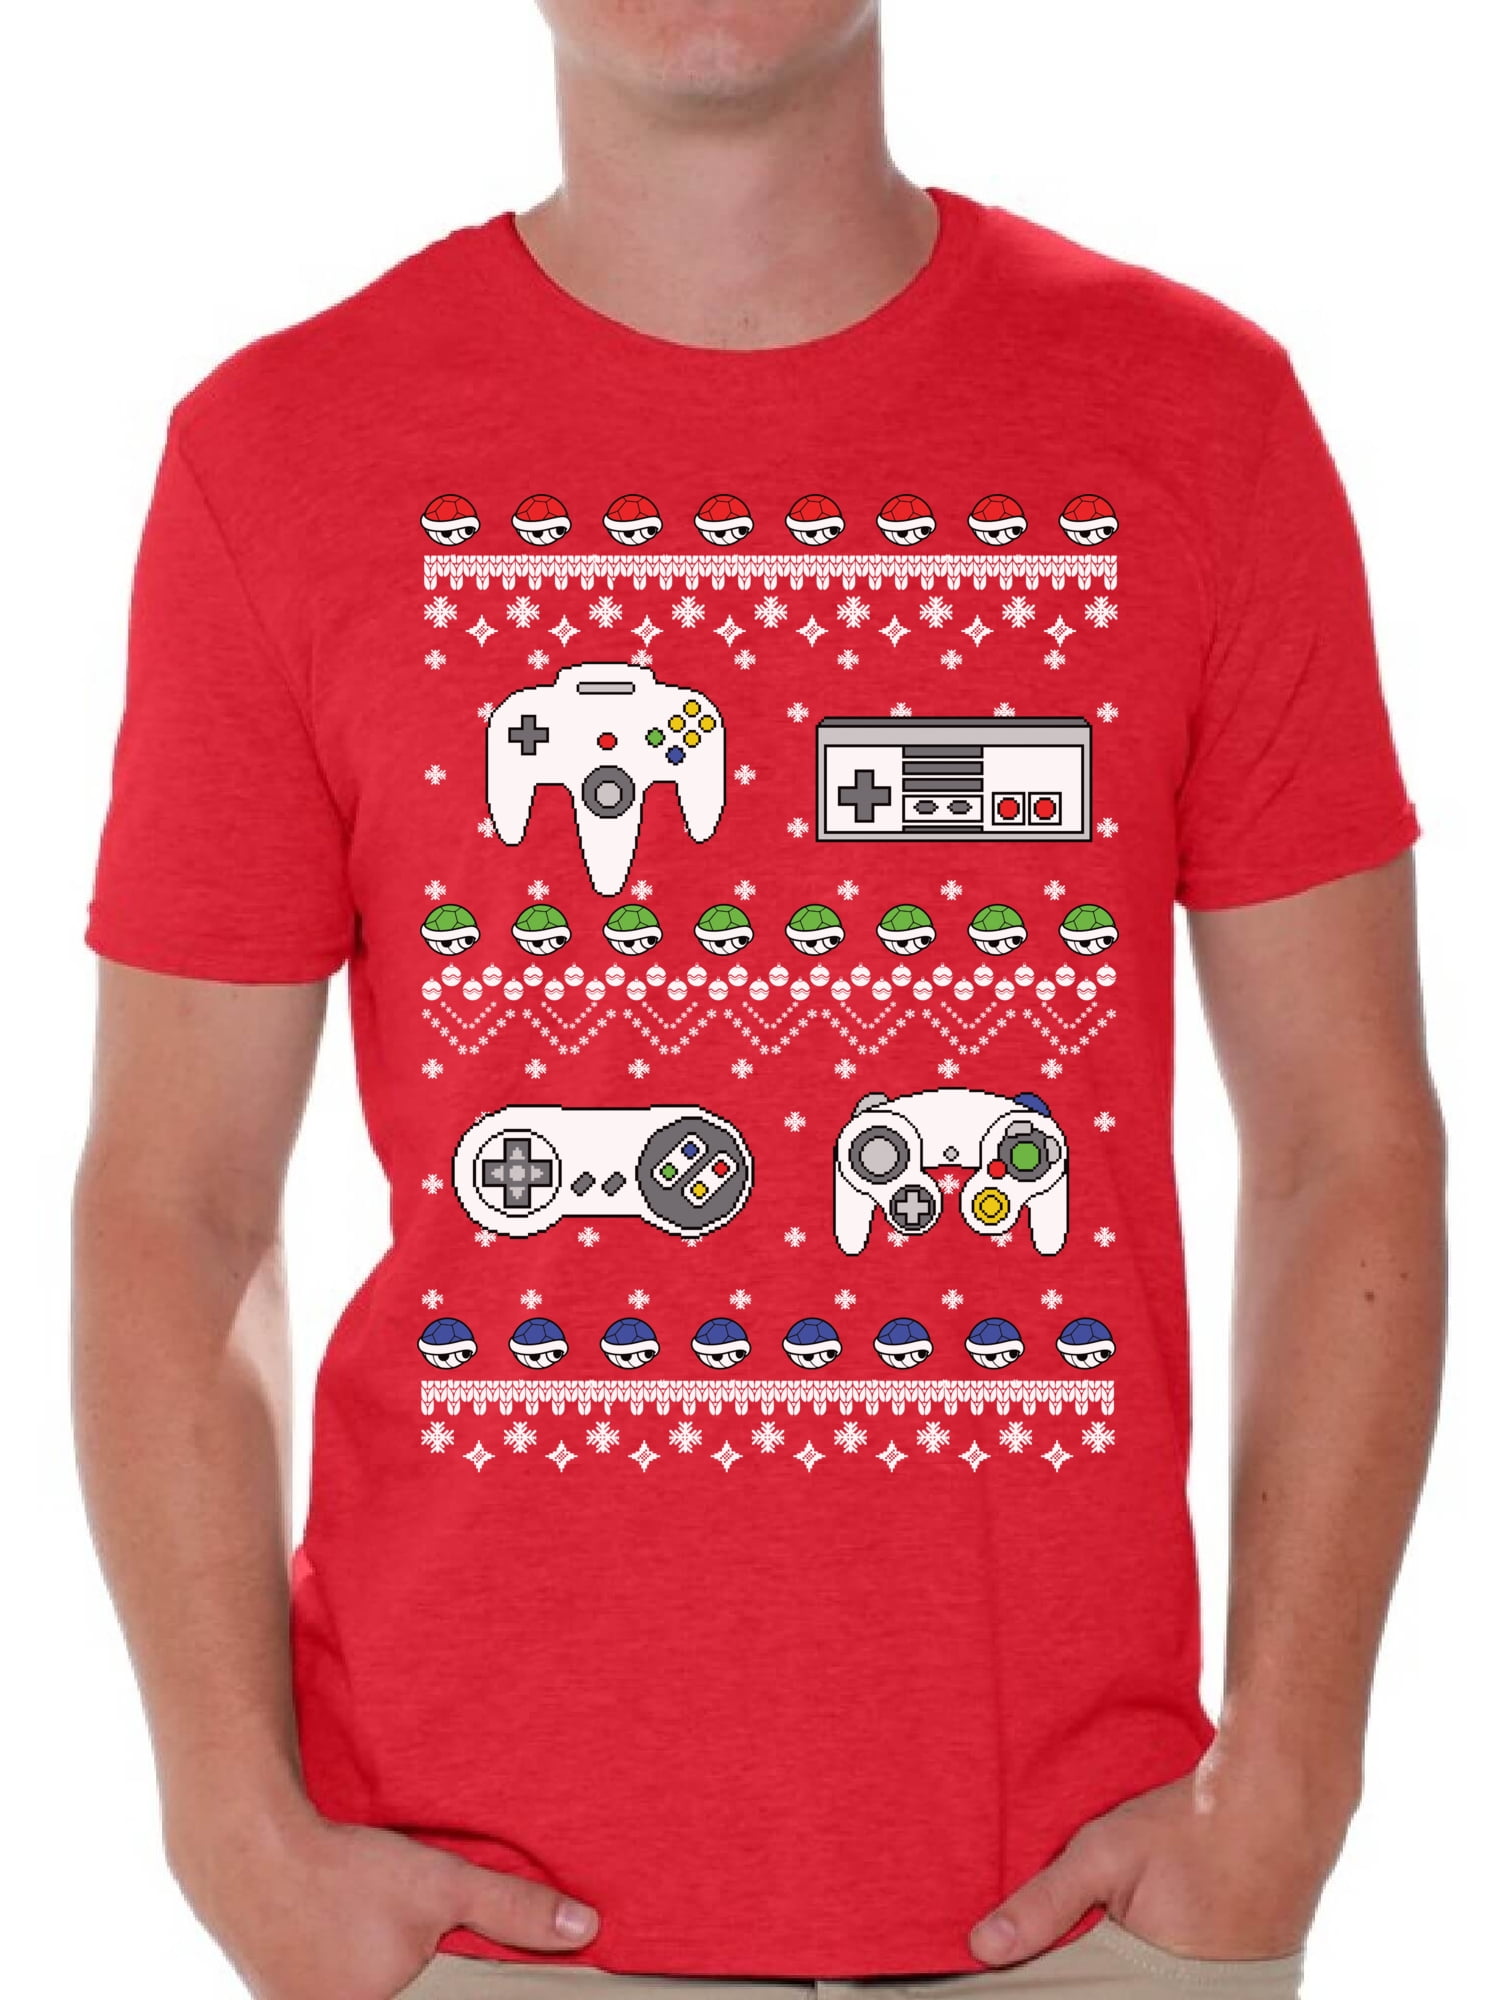 Nietje Trolley Perth Awkward Styles Gamer Christmas Tshirt for Men Retro Gamer Shirt Funny  Christmas Shirts for Men Ugly Christmas T Shirt Geeky Christmas T-Shirt  Xmas Party Gifts for Him Nerdy Xmas Tshirt Xmas Gaming -